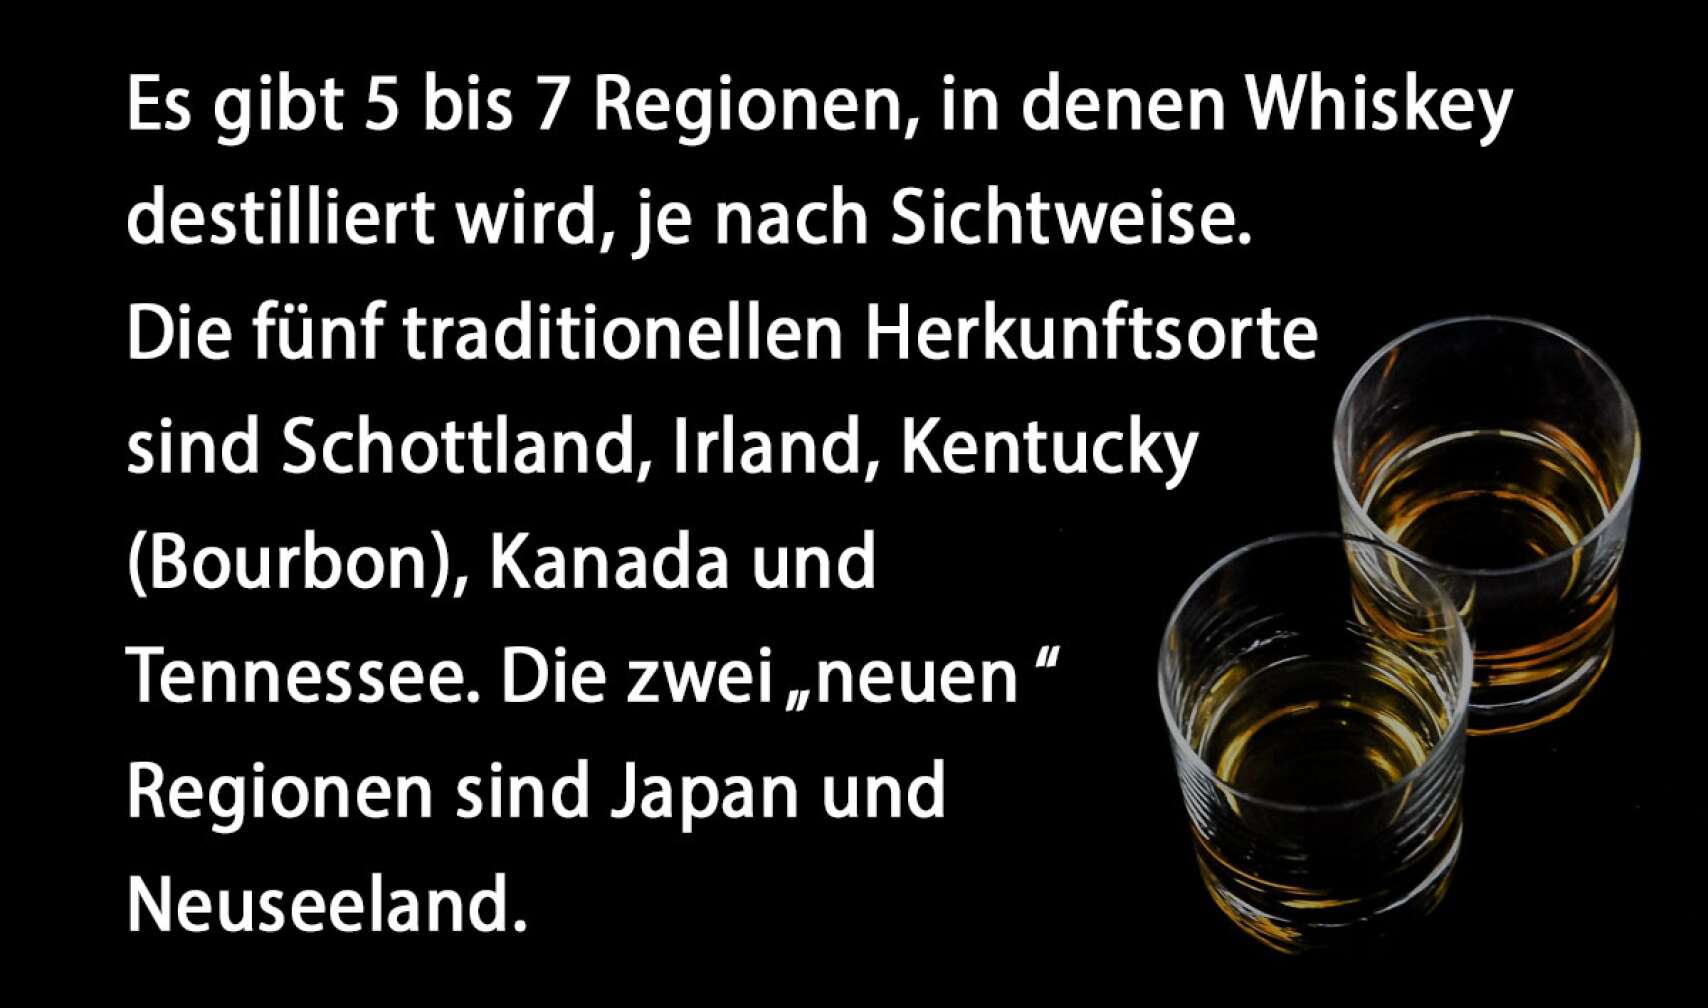 Es gibt 5 bis 7 Regionen, in denen Whiskey destilliert wird, je nach Sichtweise. Die fünf traditionellen Herkunftsorte sind Schottland, Irland, Kentucky (Bourbon), Kanada und Tennessee. Die zwei „neuen“ Regionen sind Japan und Neuseeland.